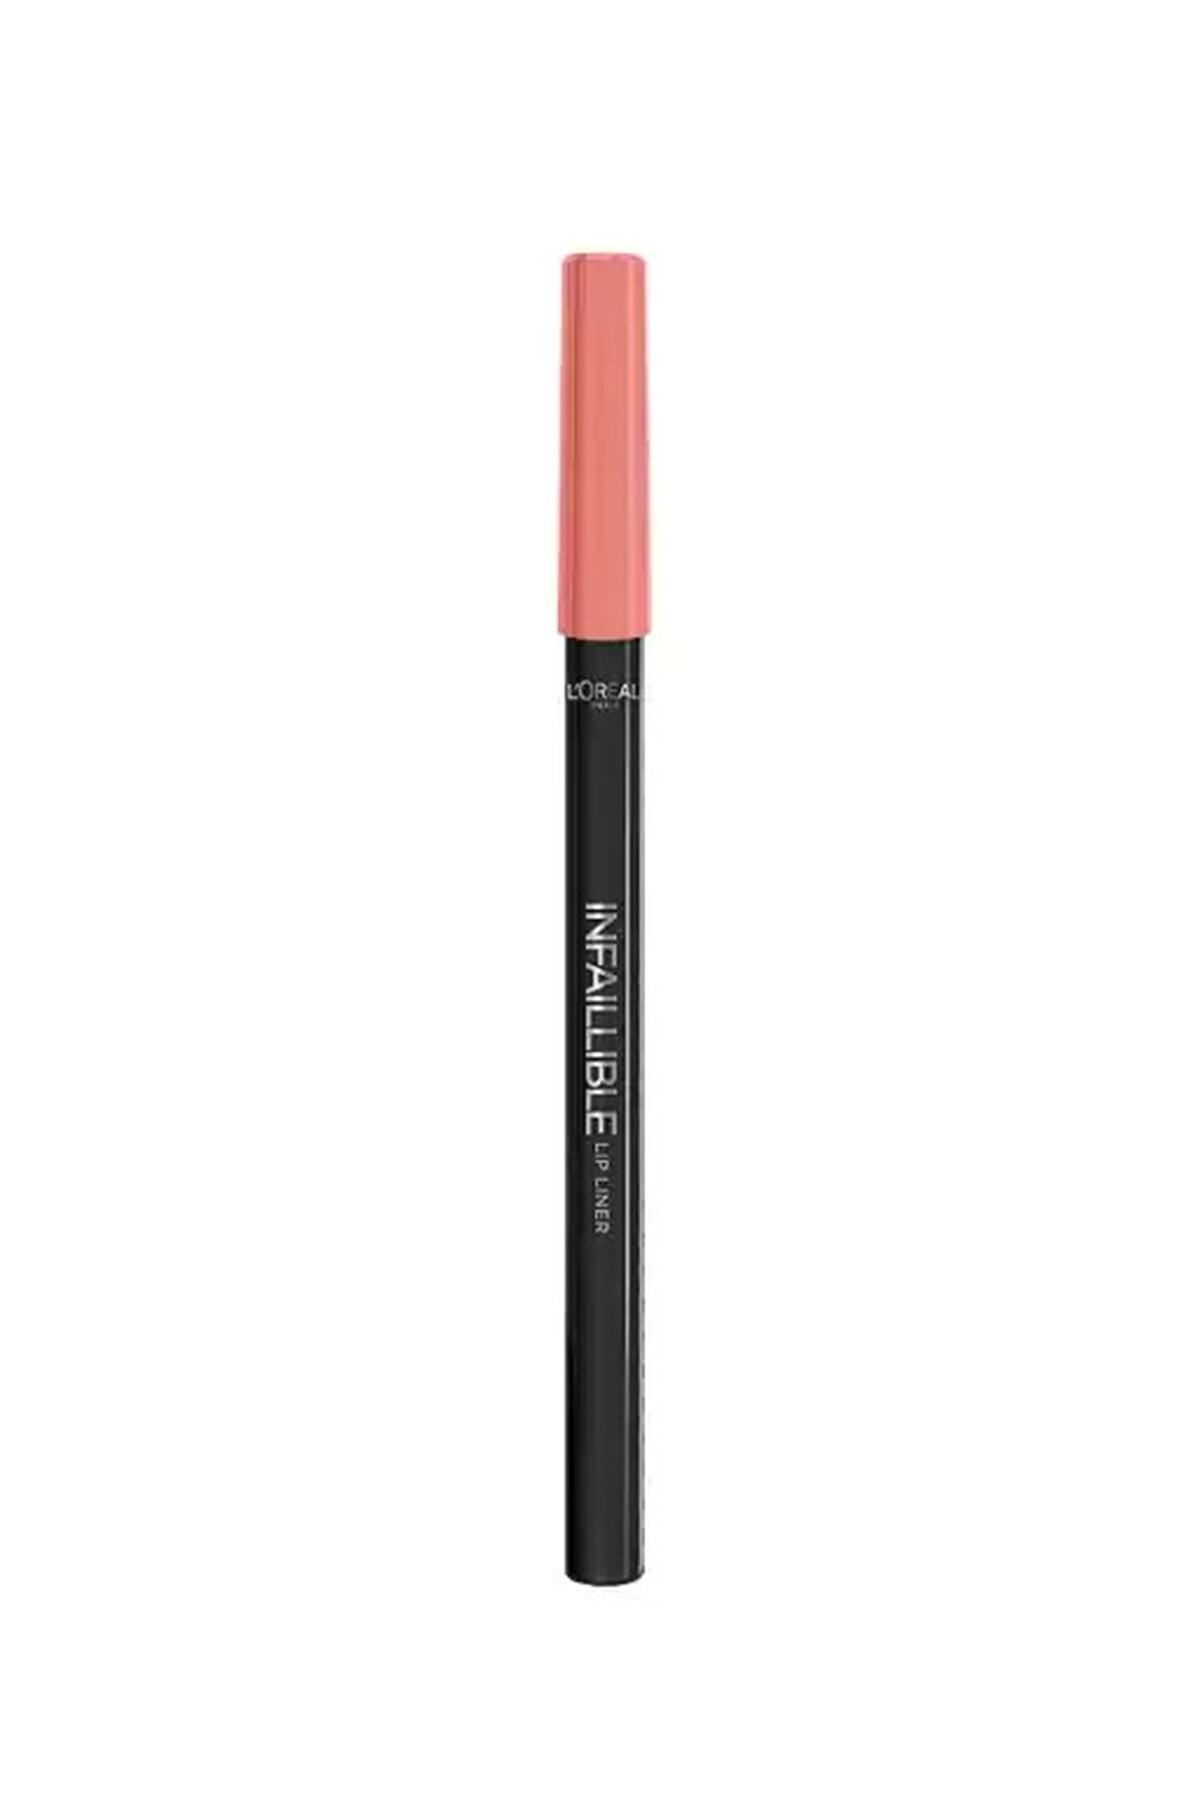 L'Oreal Paris Dudak Kalemi - Infaillible Lip Pencil 201 Hollywood Beige 3600523485635